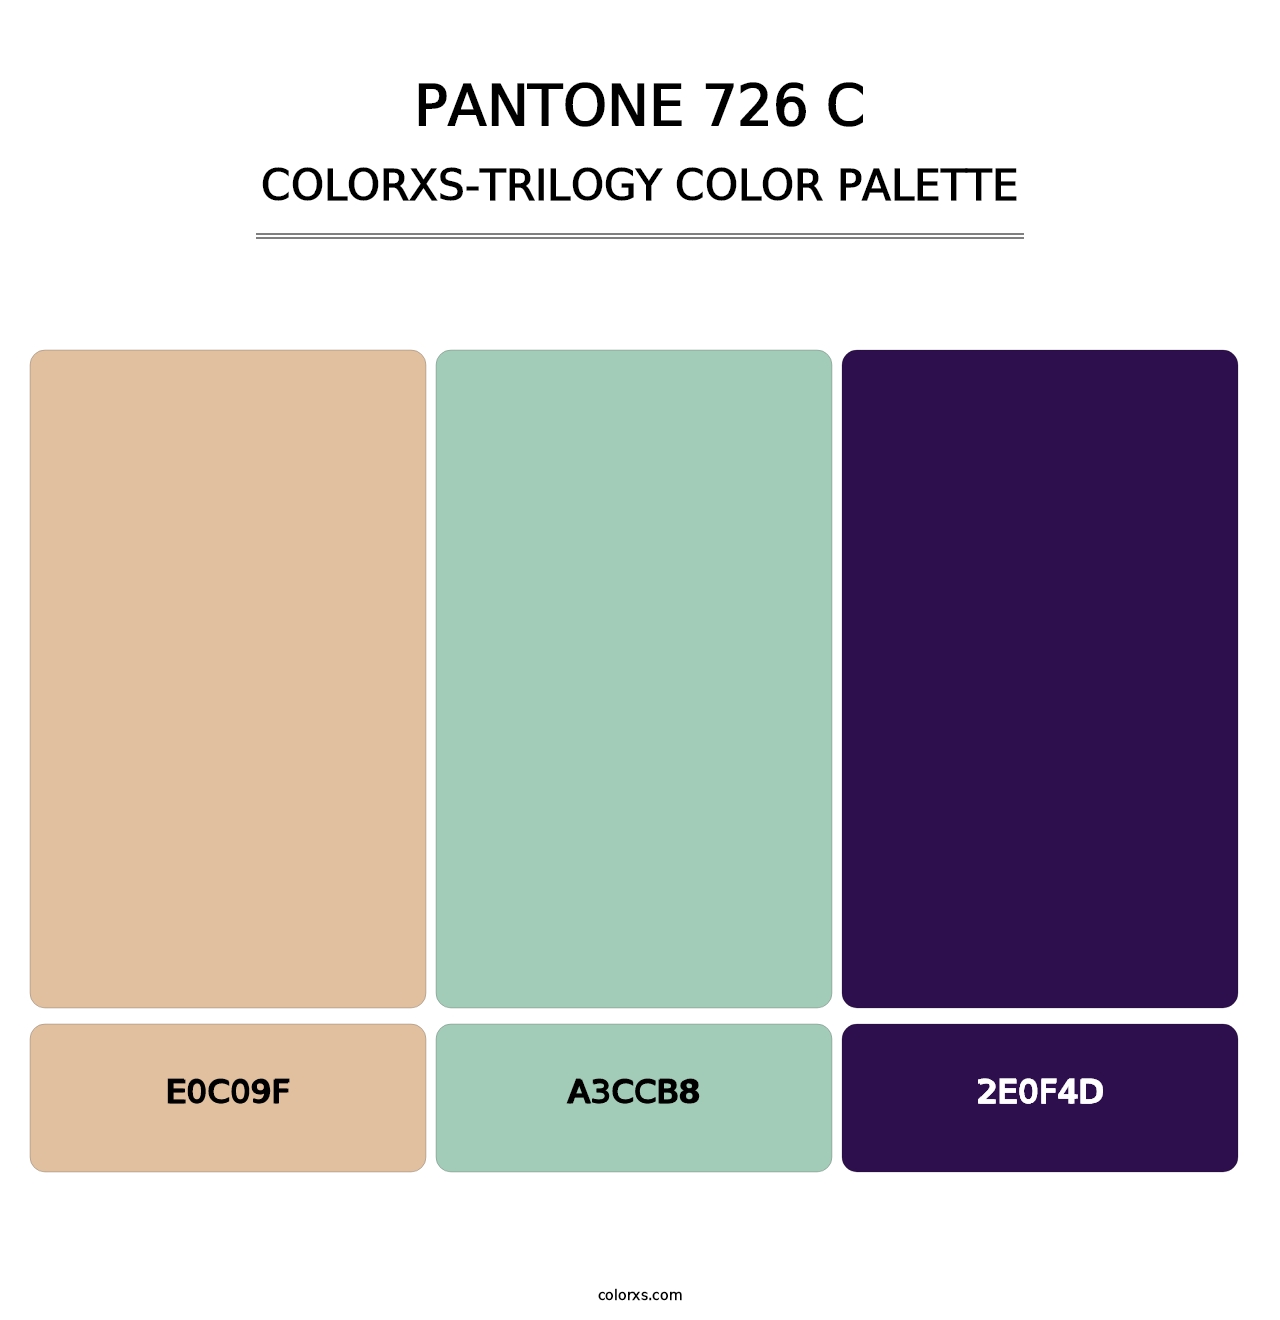 PANTONE 726 C - Colorxs Trilogy Palette